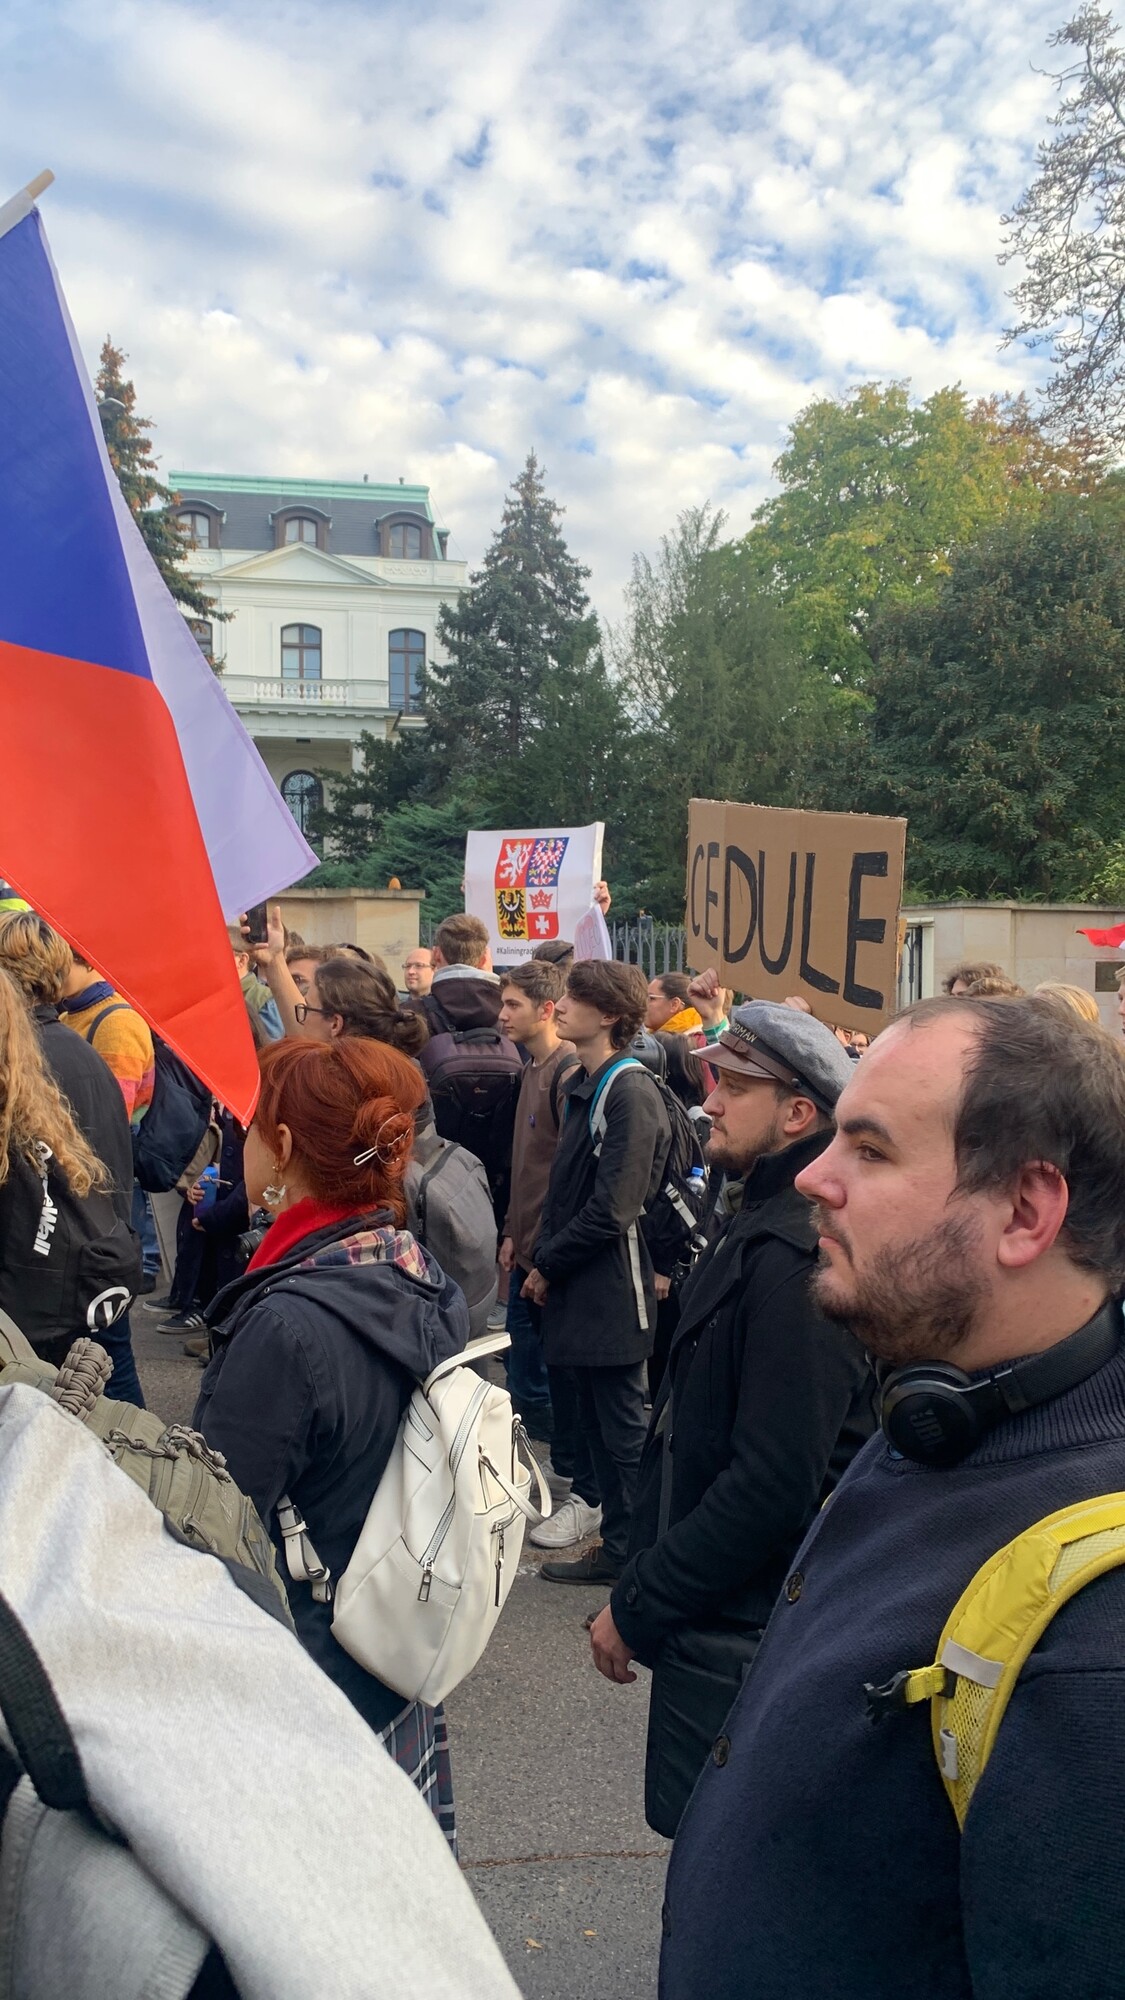 Demonstrace za anexi Královce Českou republikou před ruskou ambasádou.